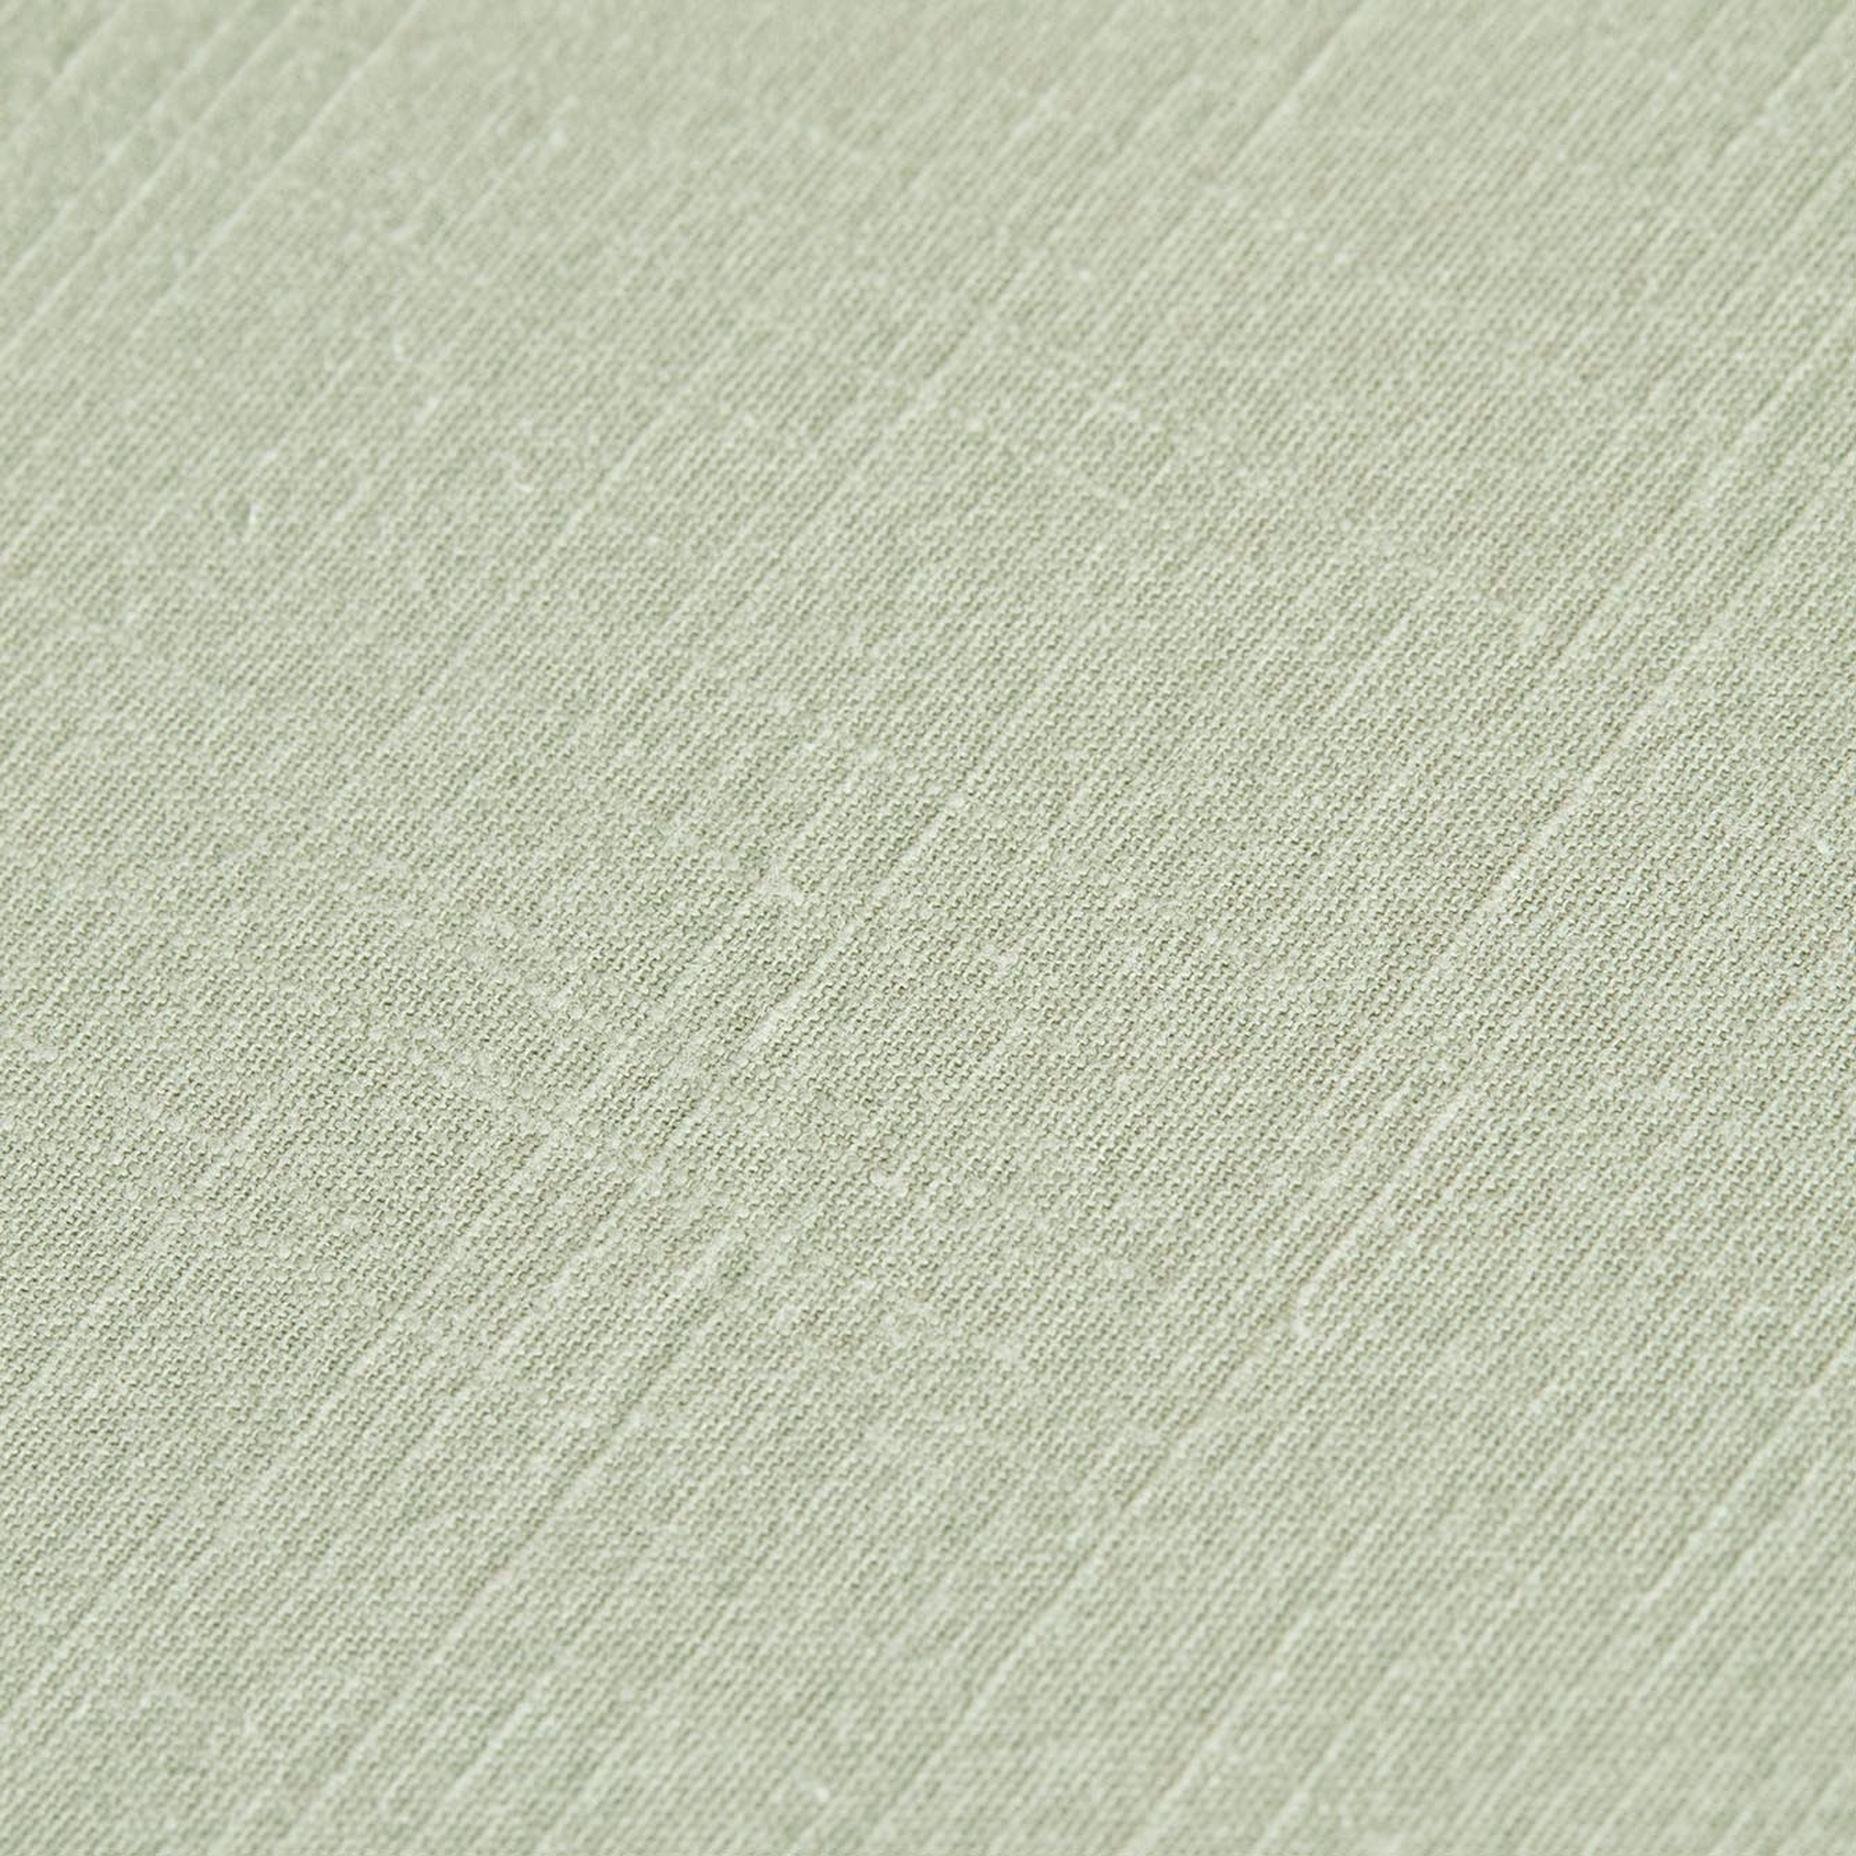 %100 Pamuk Macahel Çift Kişilik Nevresim Takımı Açık Yeşil (200x220 cm)